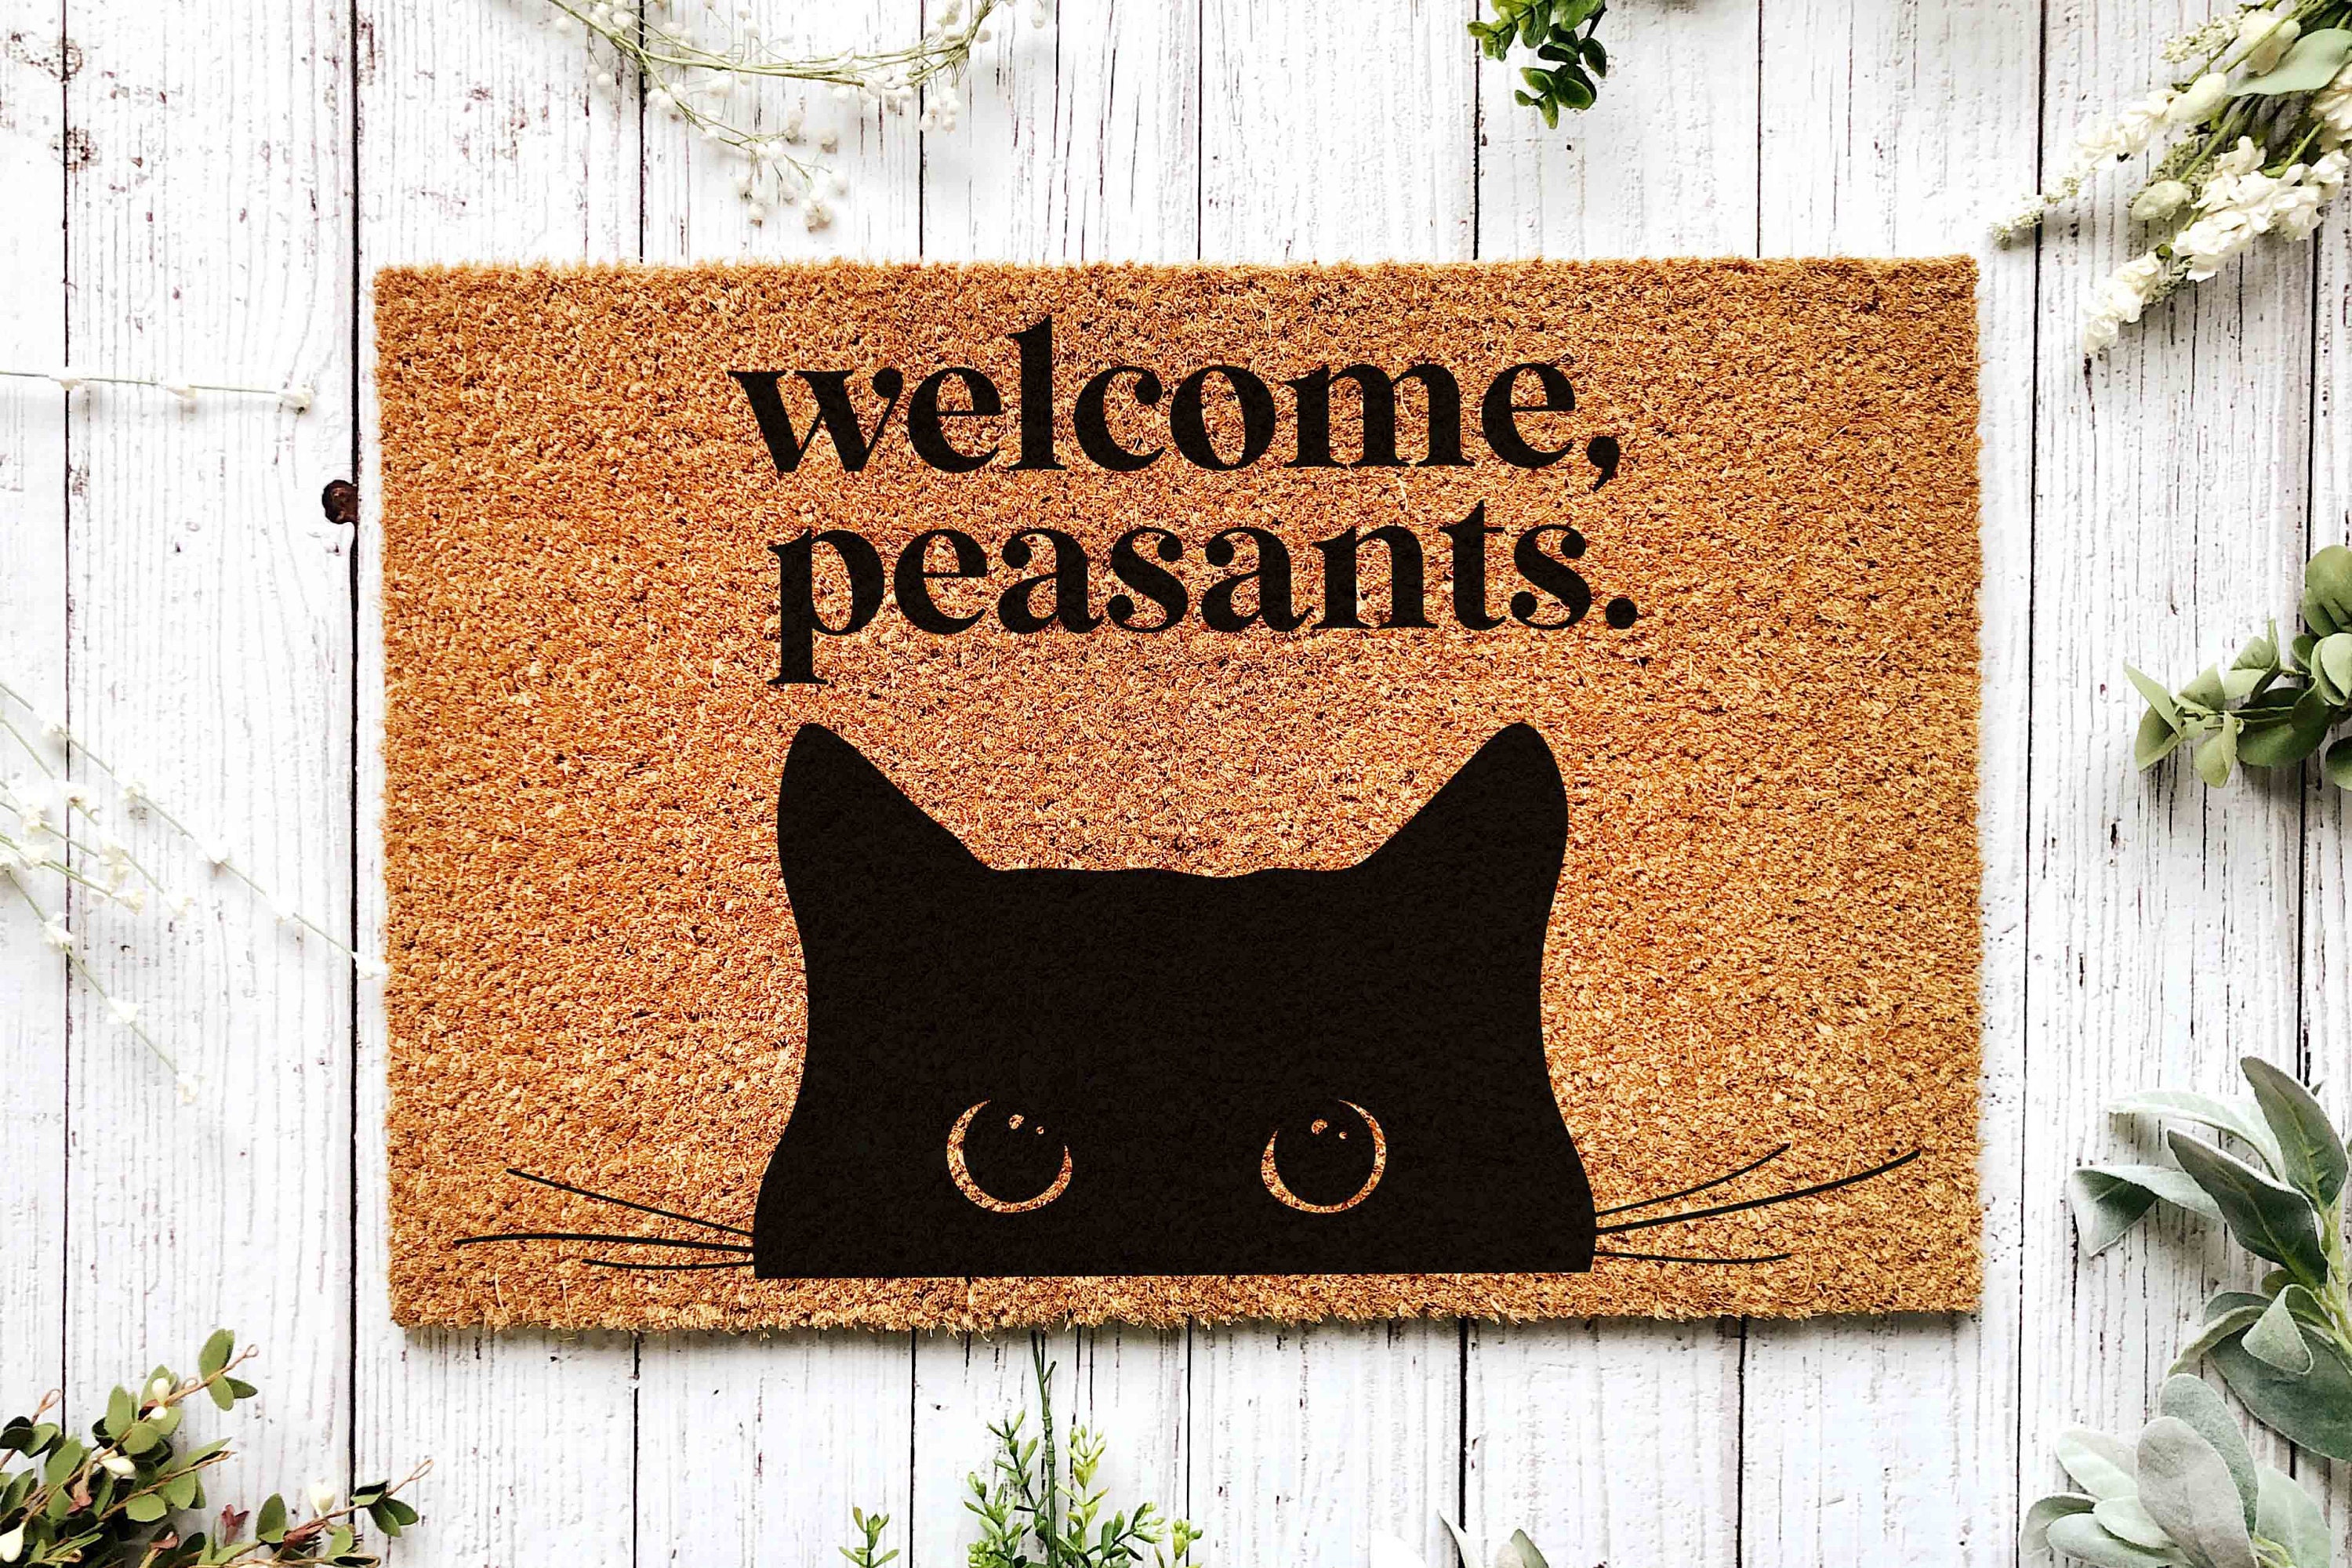 Tuxedo Cat Doormat, 3D Photo Cat Doormat, New Home Gift, Cat Decorative Mat,  Welcome to Our Home Doormat, Funny Welcome Mat 